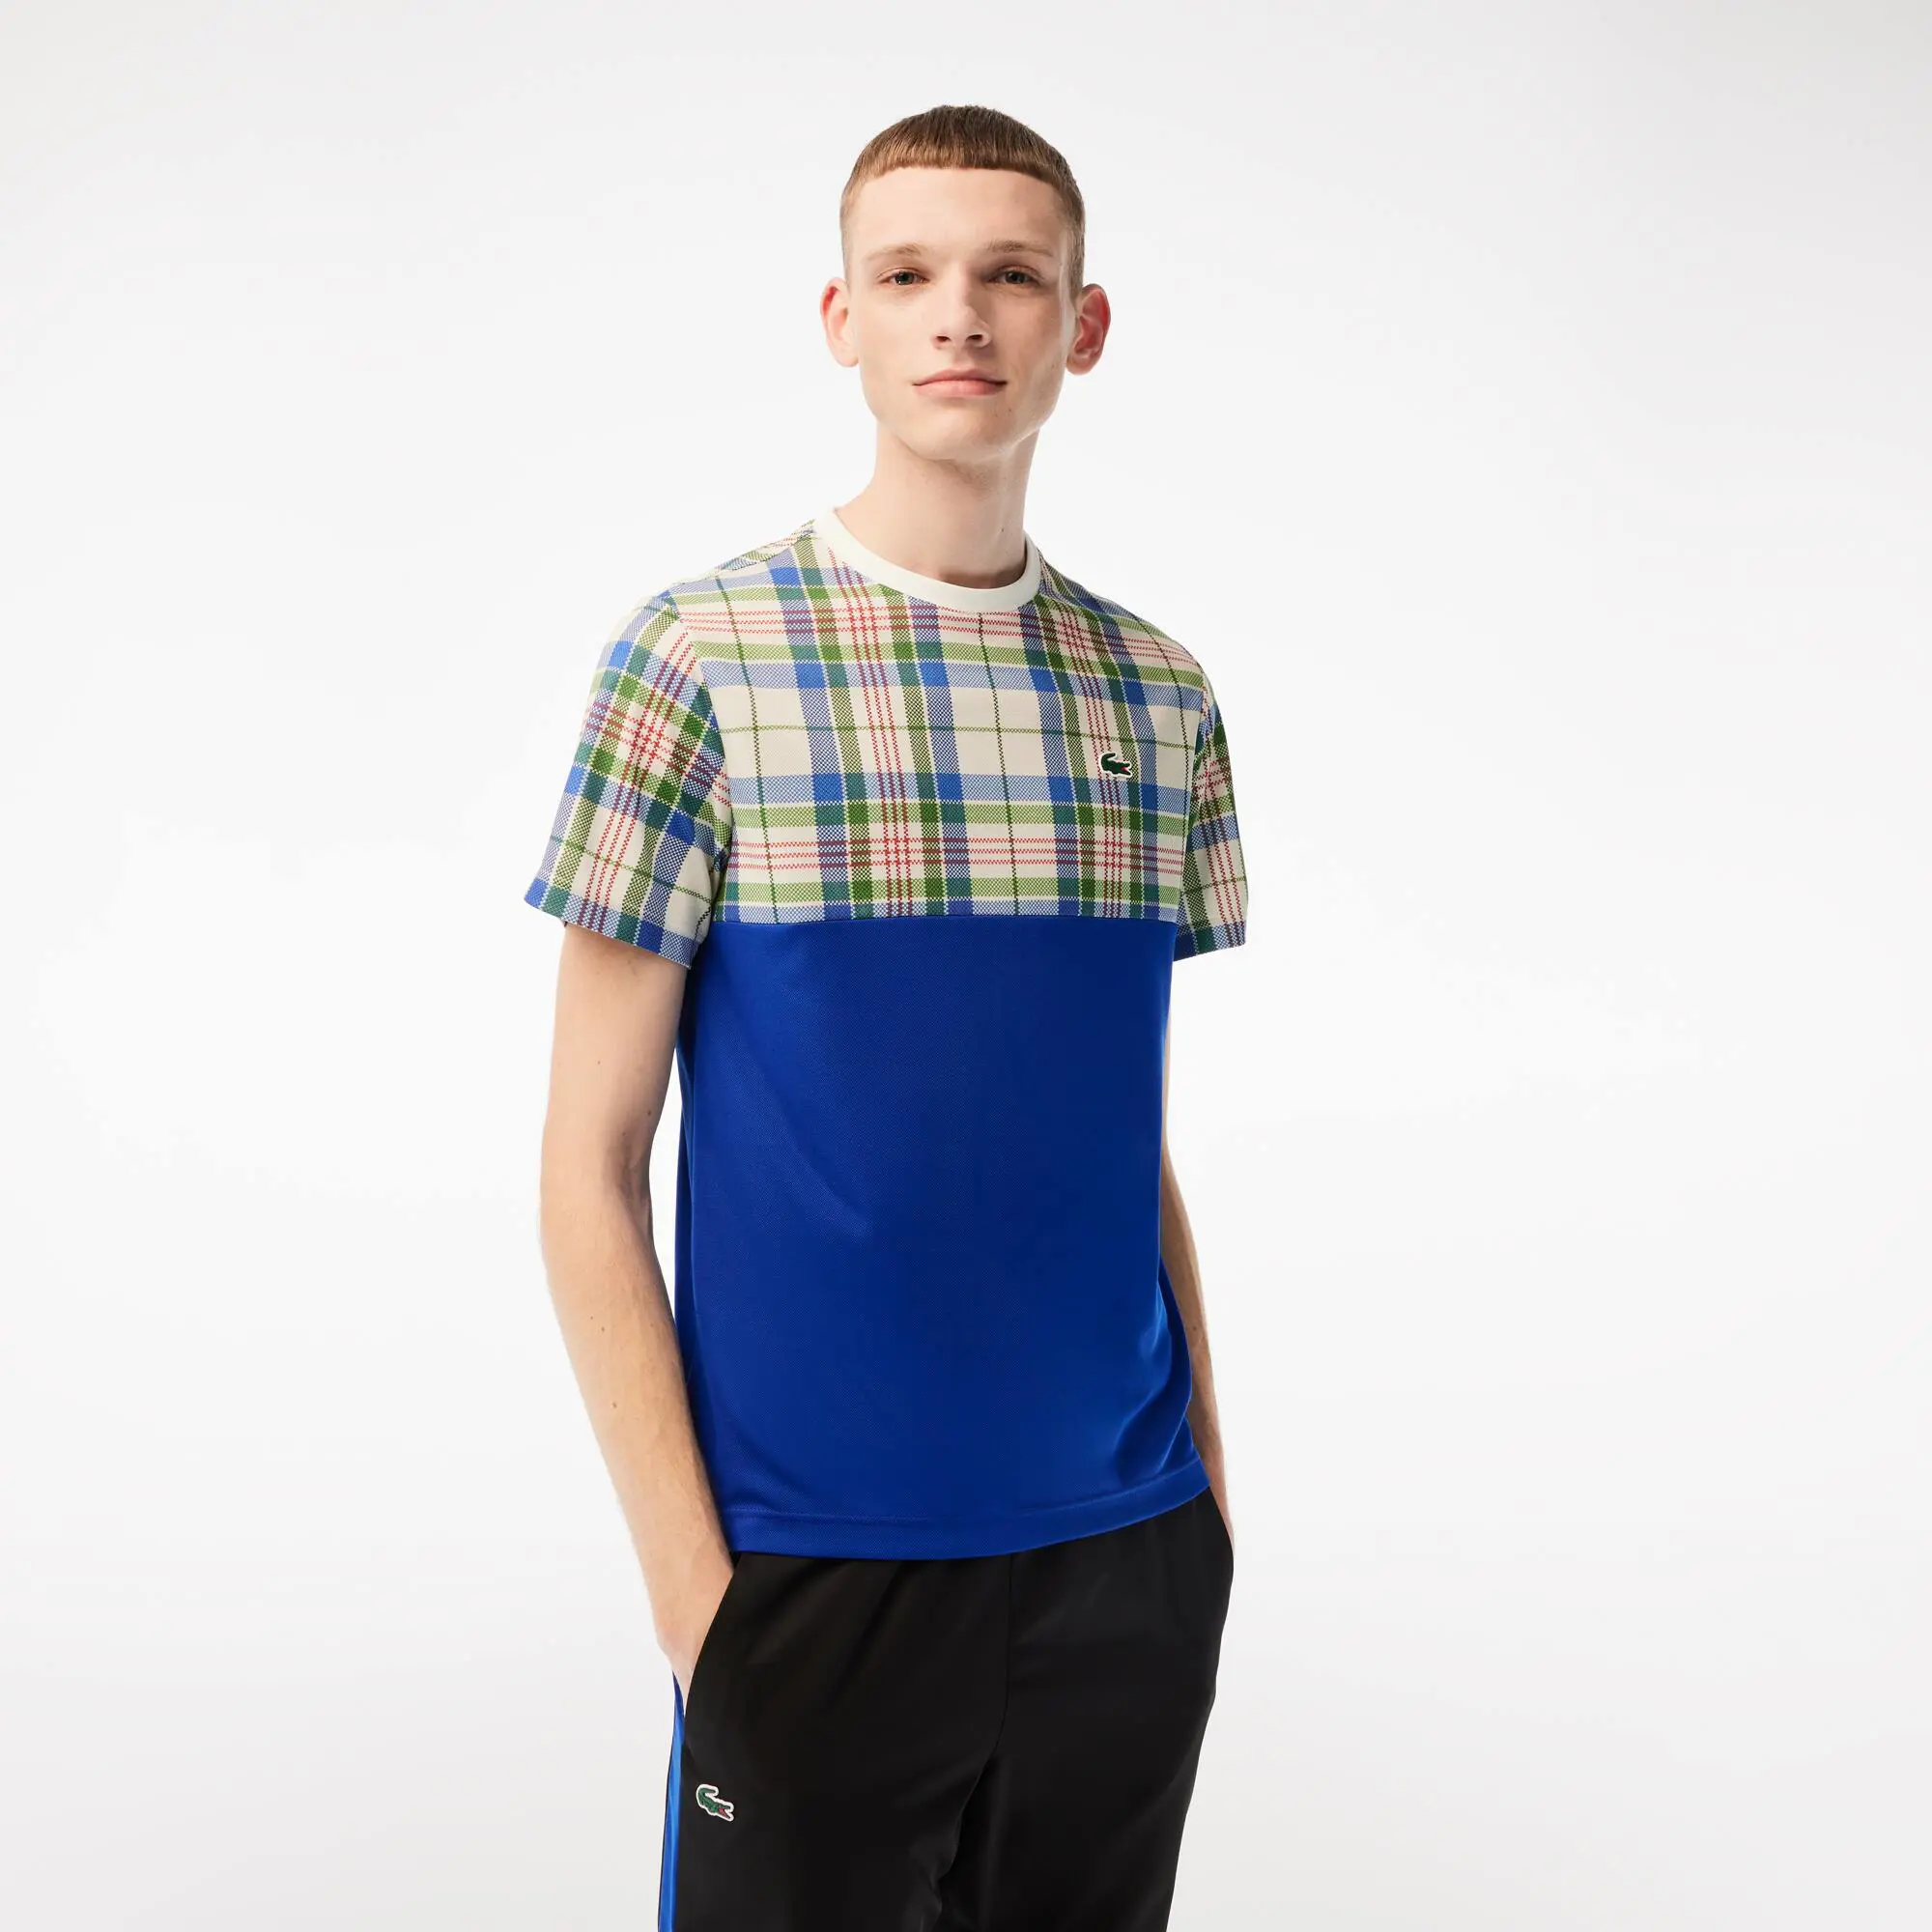 Lacoste T-shirt homme Lacoste Tennis regular fit imprimé carreaux. 1